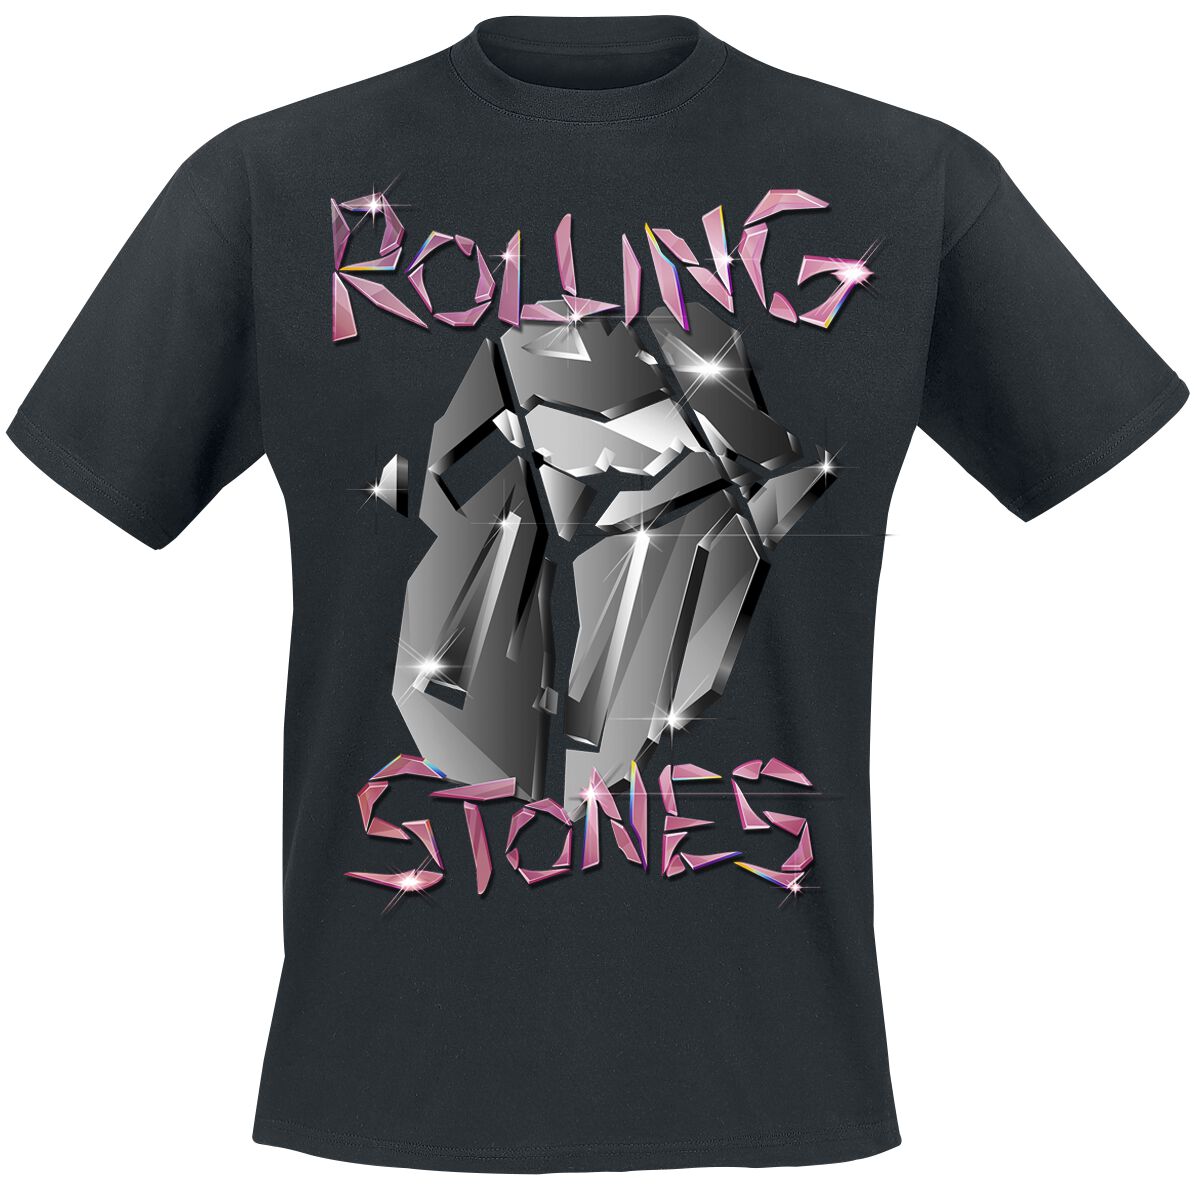 The Rolling Stones T-Shirt - Pop Up Tour Germany - Exclusive T-Shirt - S bis 3XL - für Männer - Größe M - schwarz  - EMP exklusives Merchandise!